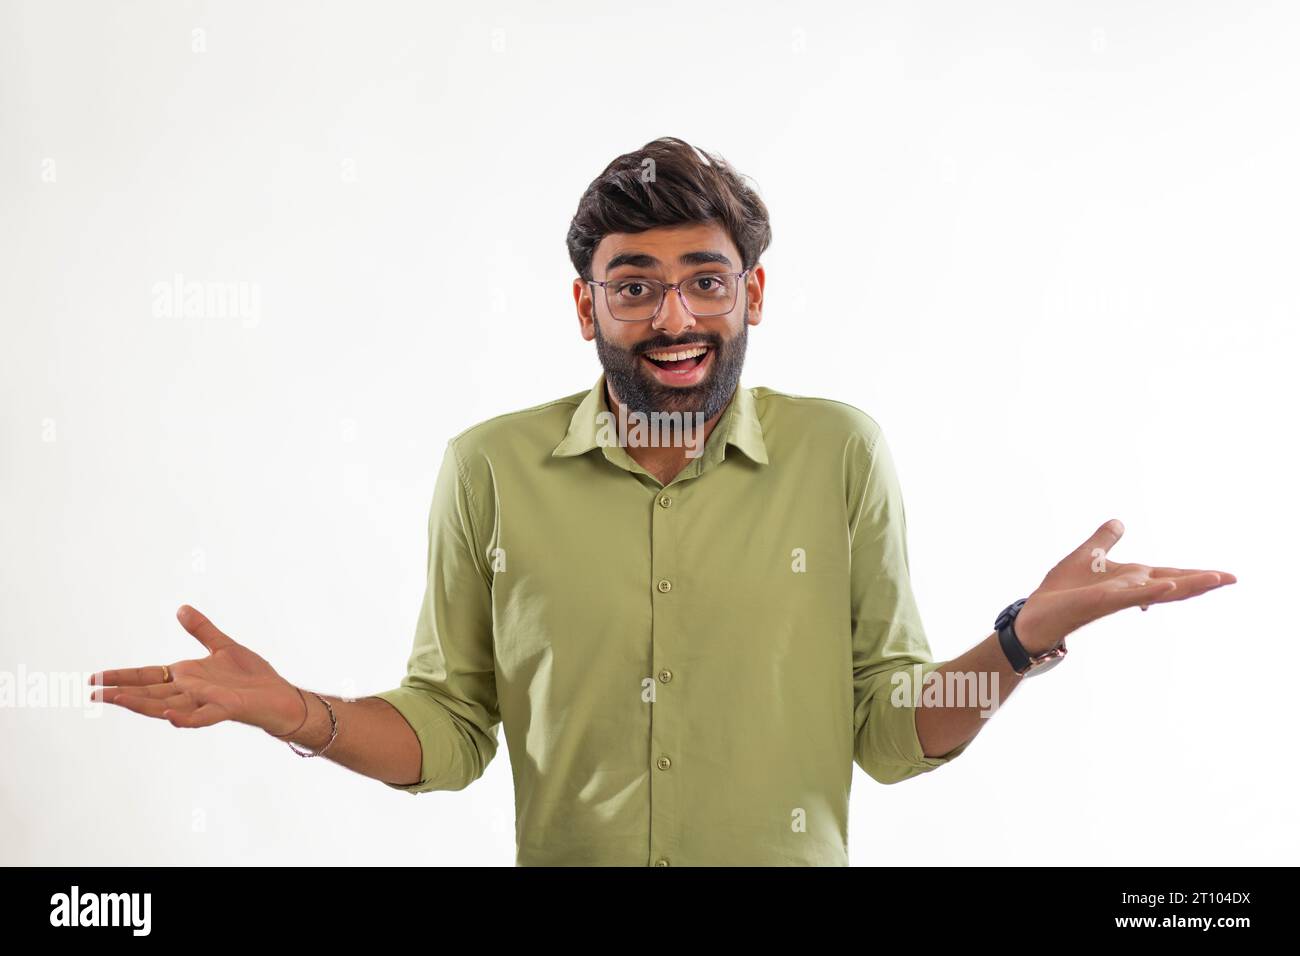 Porträt eines lächelnden jungen Mannes, der vor weißem Hintergrund gestickt ist Stockfoto